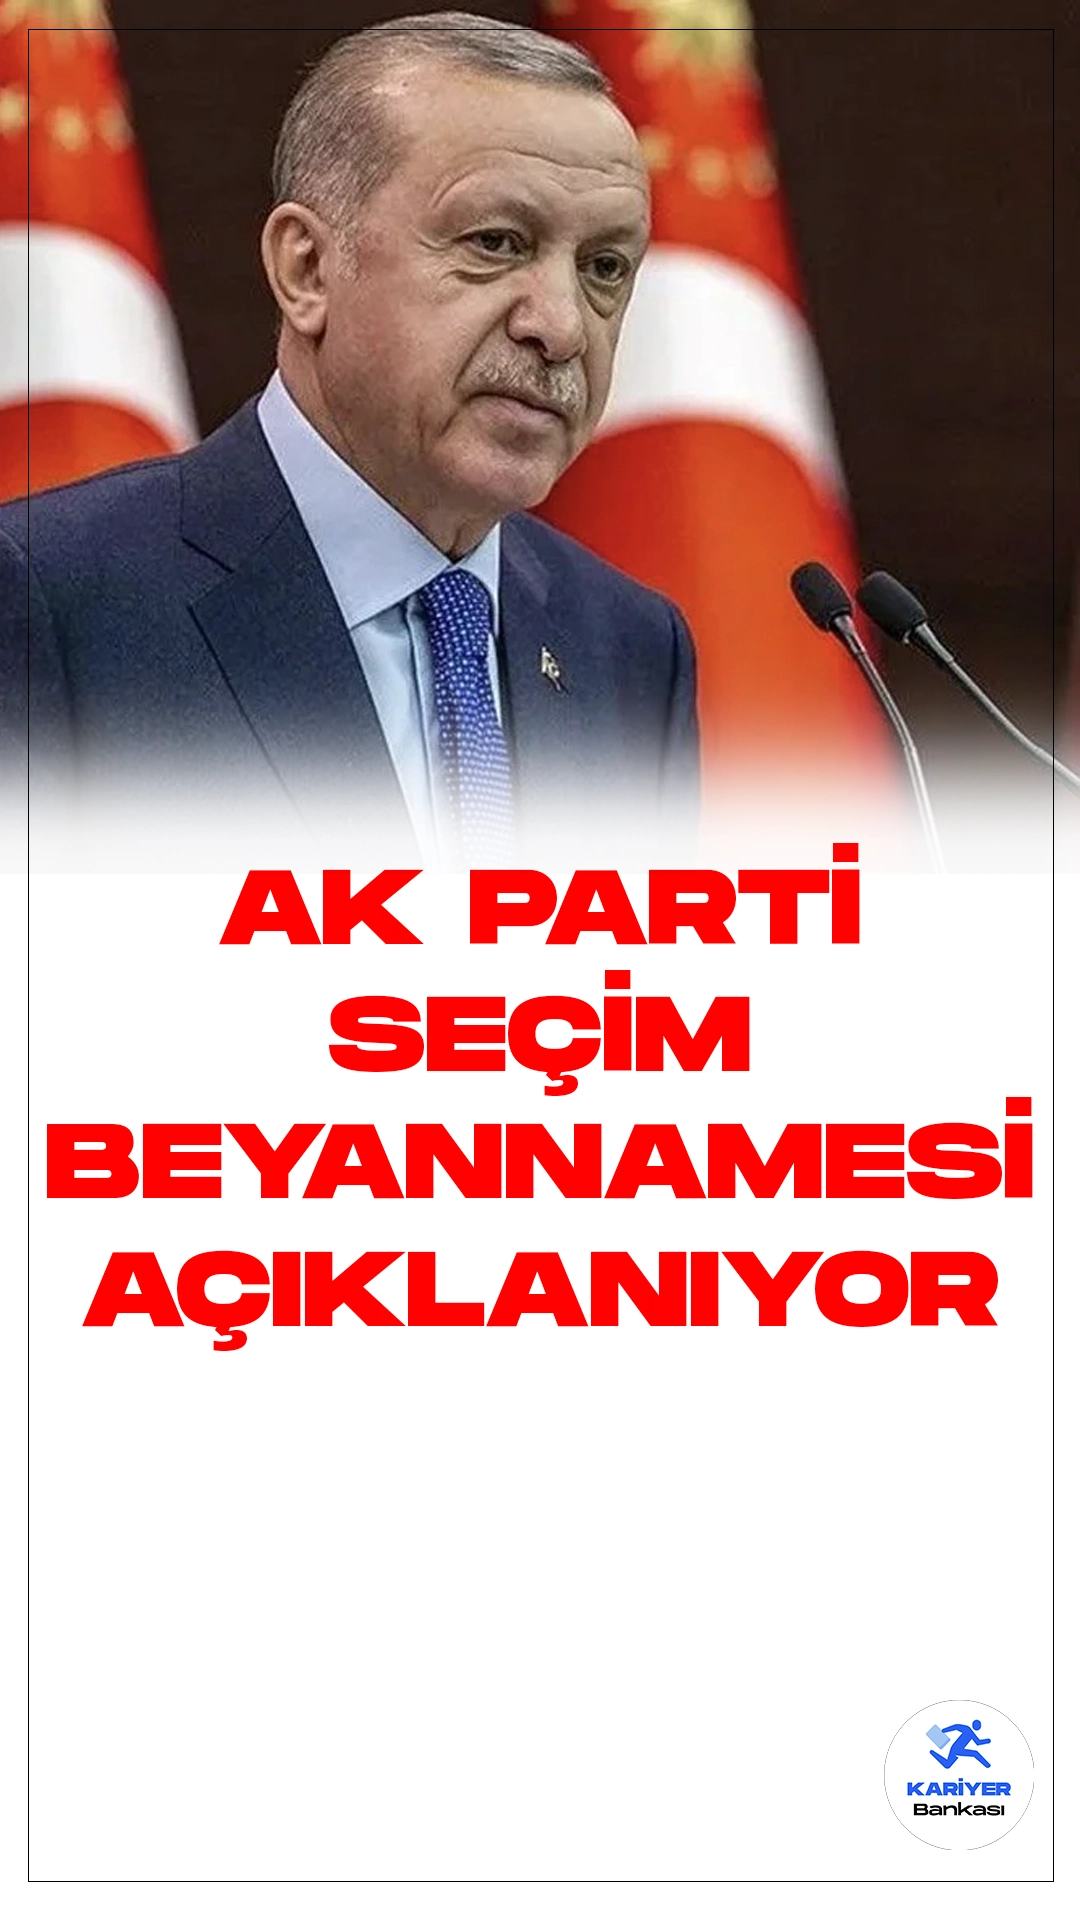 Cumhurbaşkanı Erdoğan Seçim Beyannamesini Açıklıyor.Cumhurbaşkanı Recep Tayyip Erdoğan, AK Parti Kongre Merkezi'nde düzenlenen “Seçim Beyannamesi Tanıtım Toplantısı” öncesinde halka hitap ediyor.